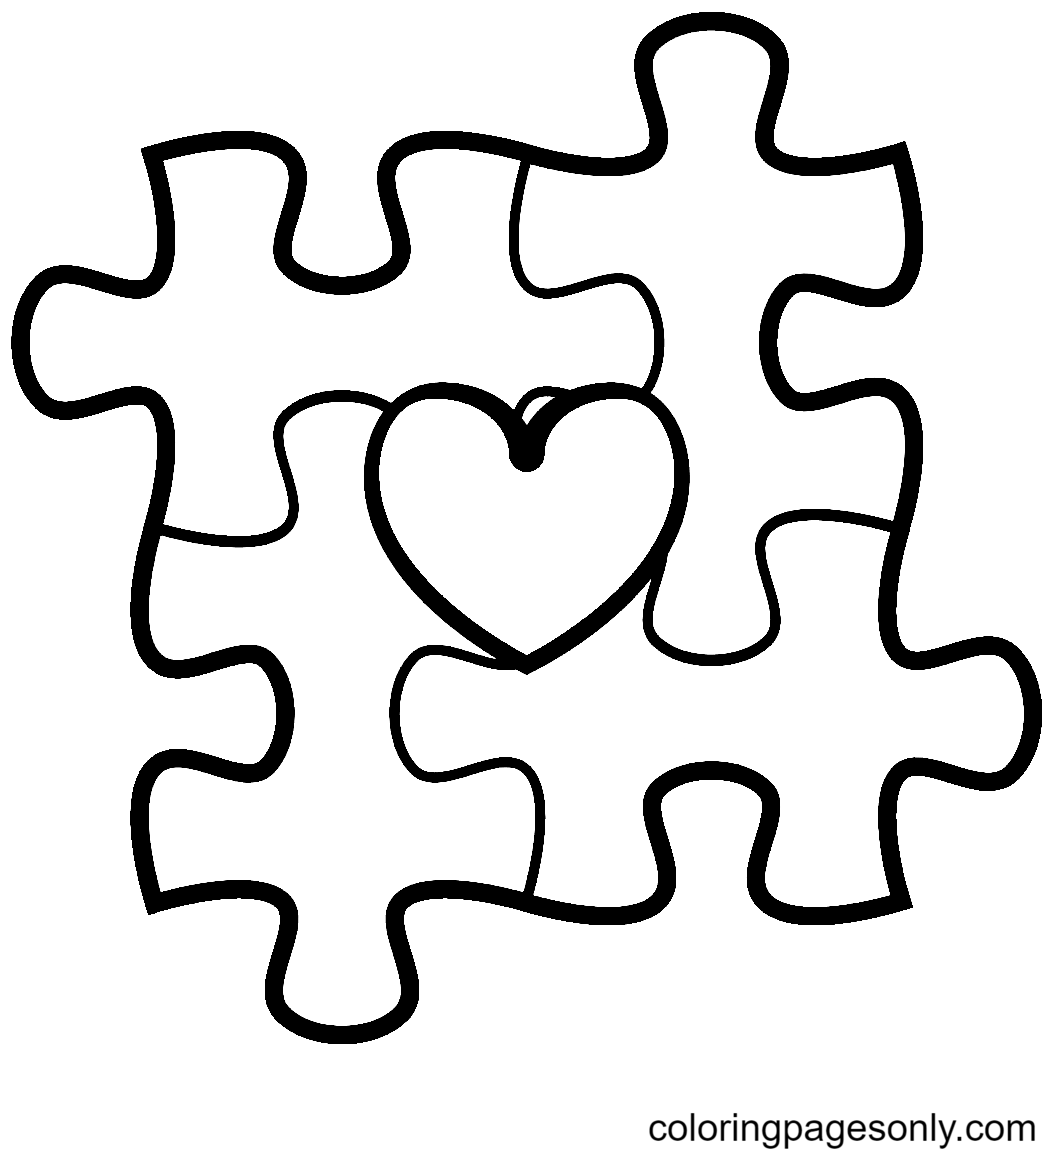 Piezas de rompecabezas de concientización sobre el autismo con corazón del Día Mundial de Concientización sobre el Autismo